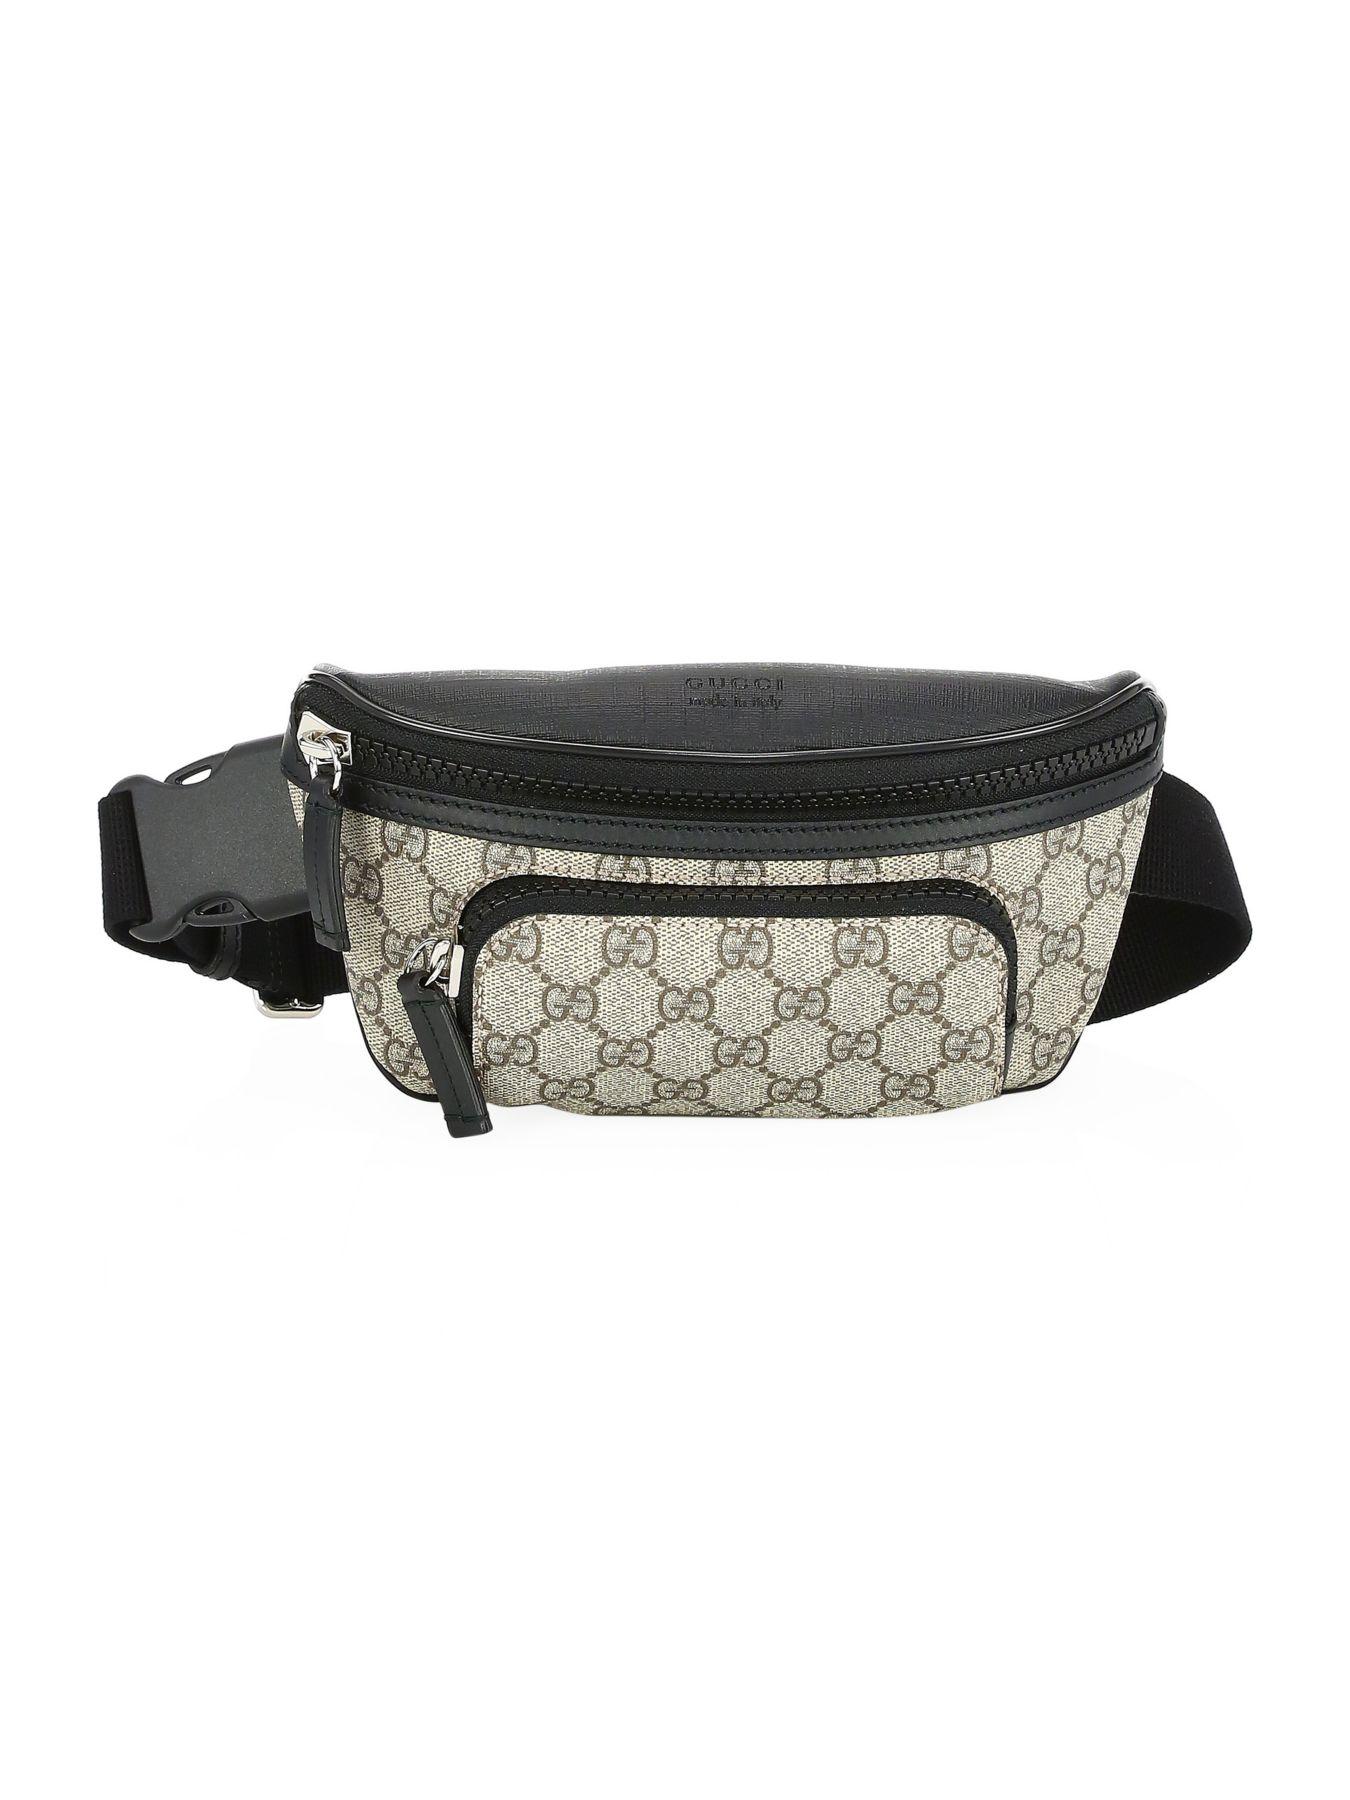 Gucci Leather GG Supreme Belt Bag in Beige (Black) for Men - Save 6% - Lyst